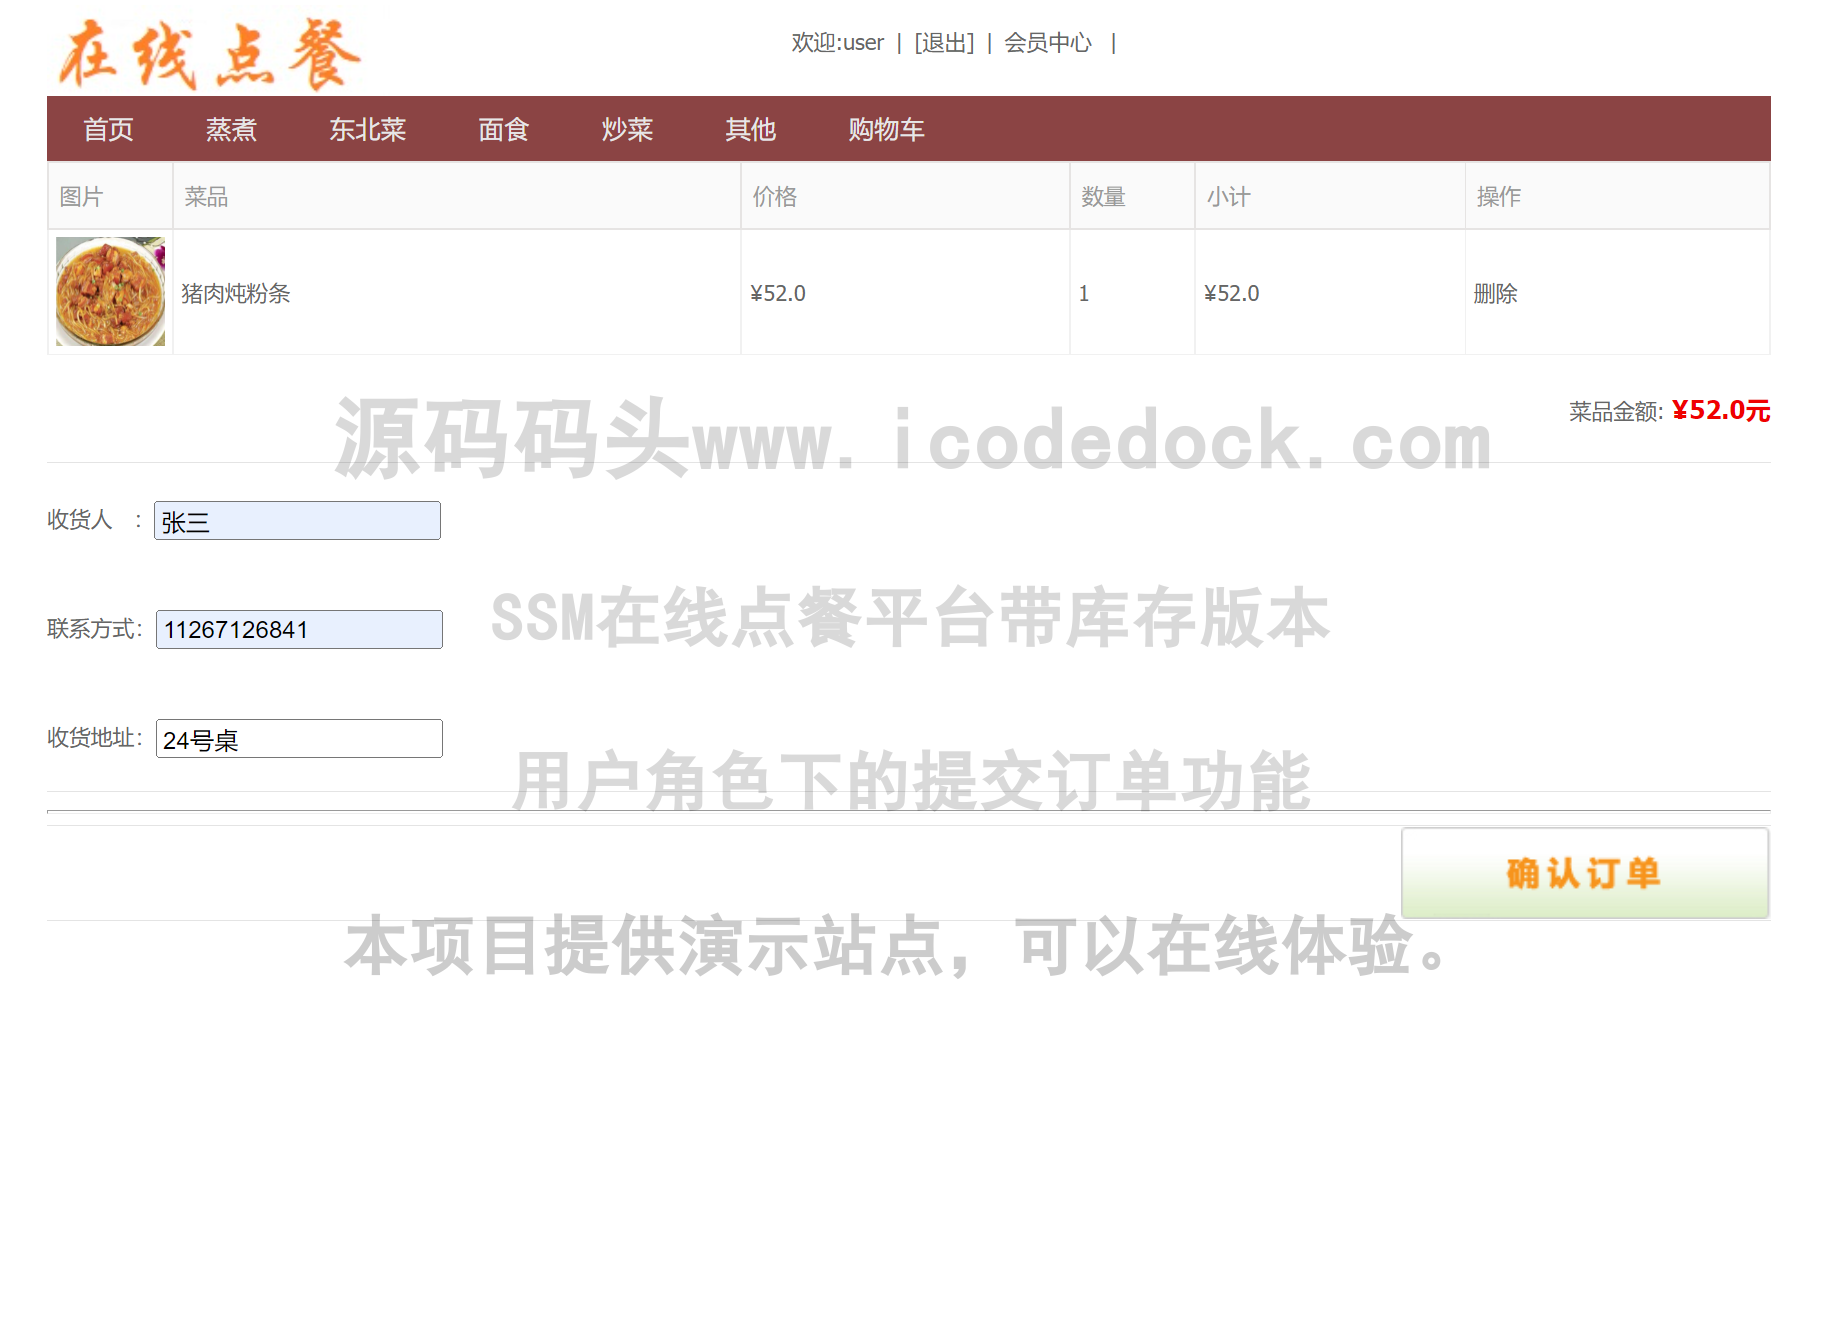 源码码头-SSM在线点餐平台带库存版本-用户角色-提交订单